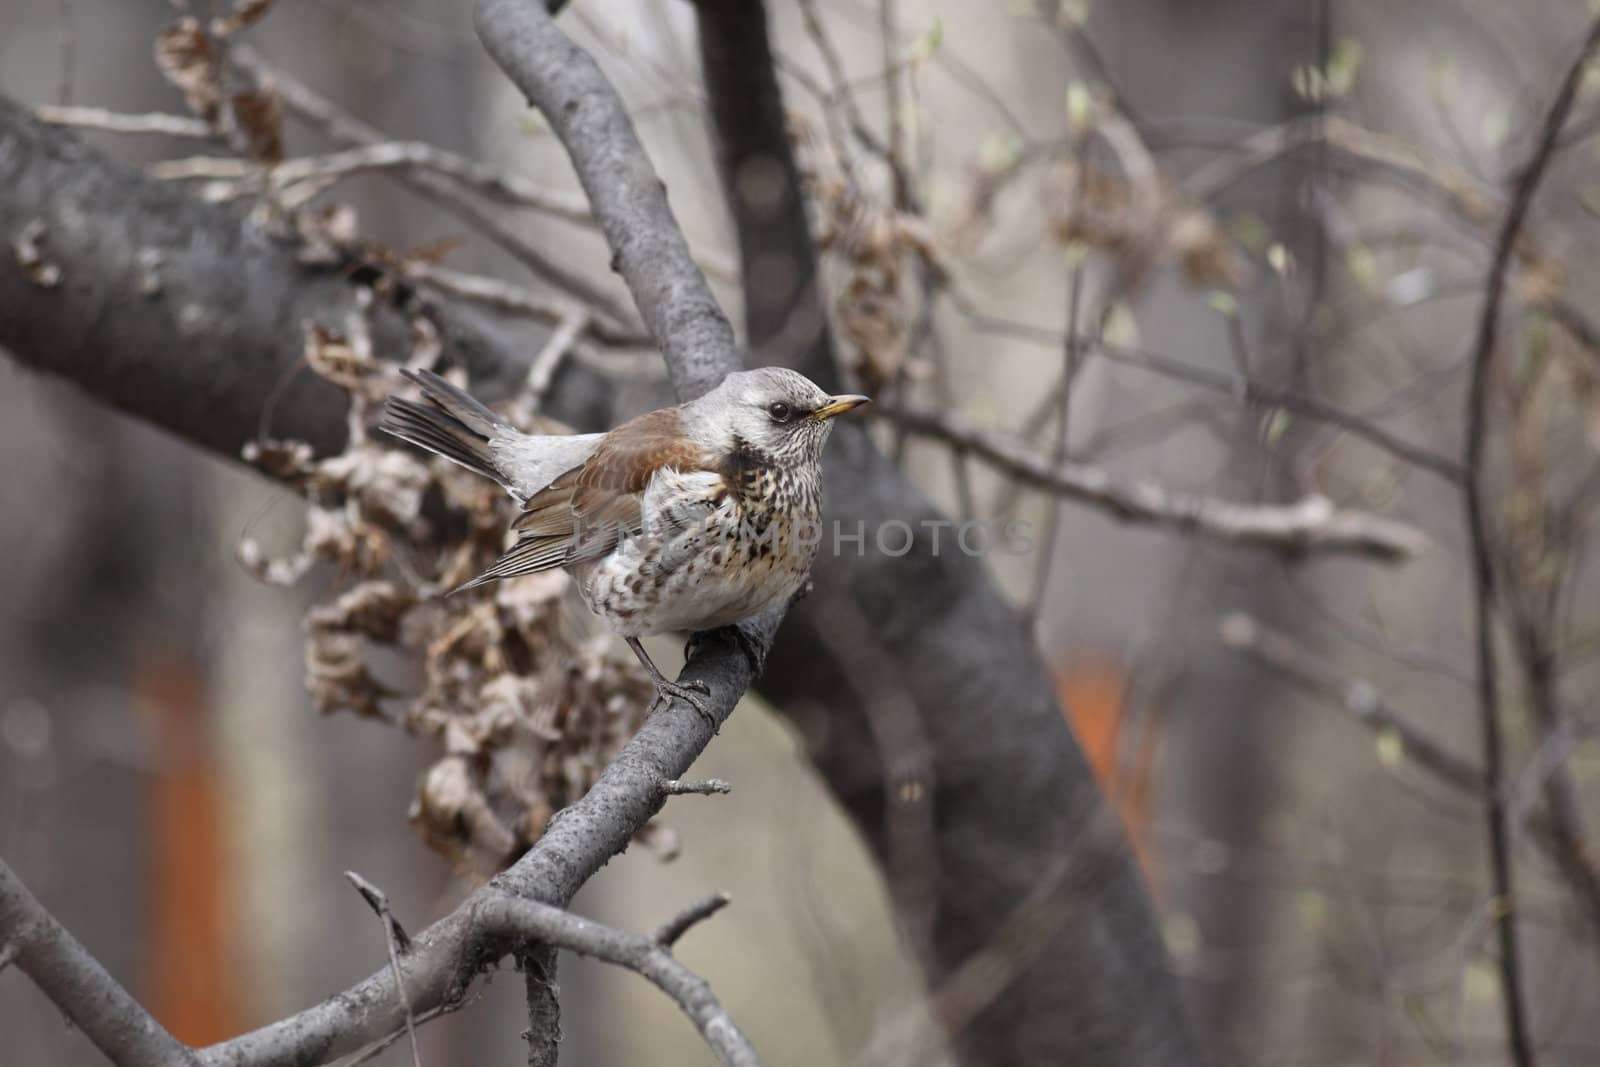  Fieldfare, (Turdus pilaris) is sitting on a branch